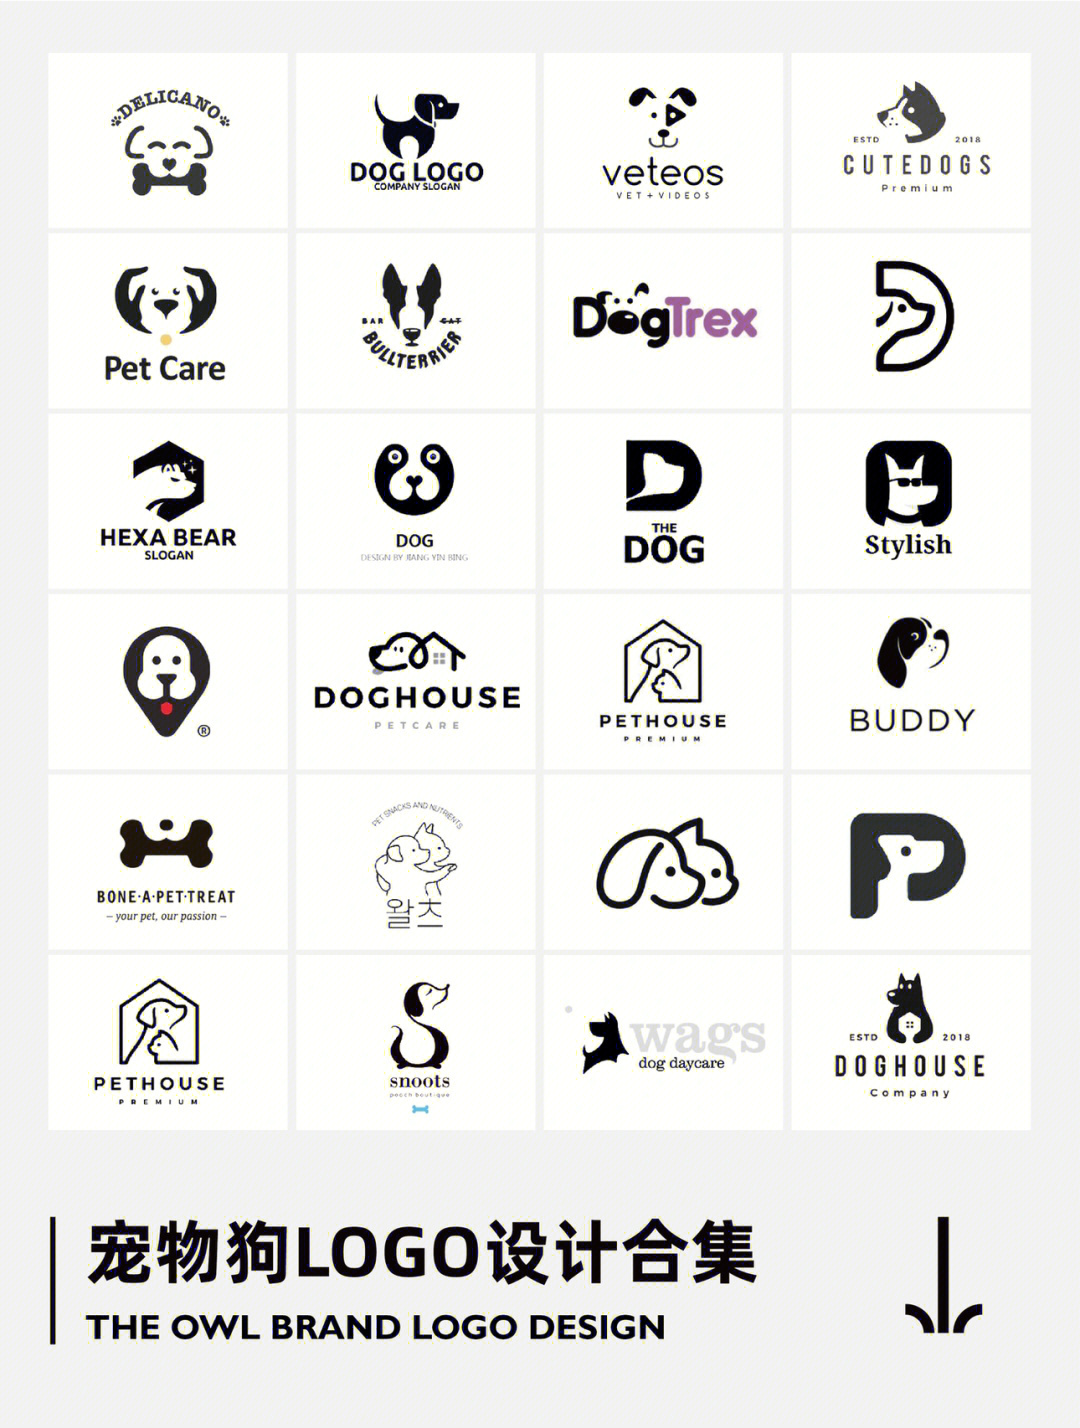 狗狗的百种logo创意设计创意灵感